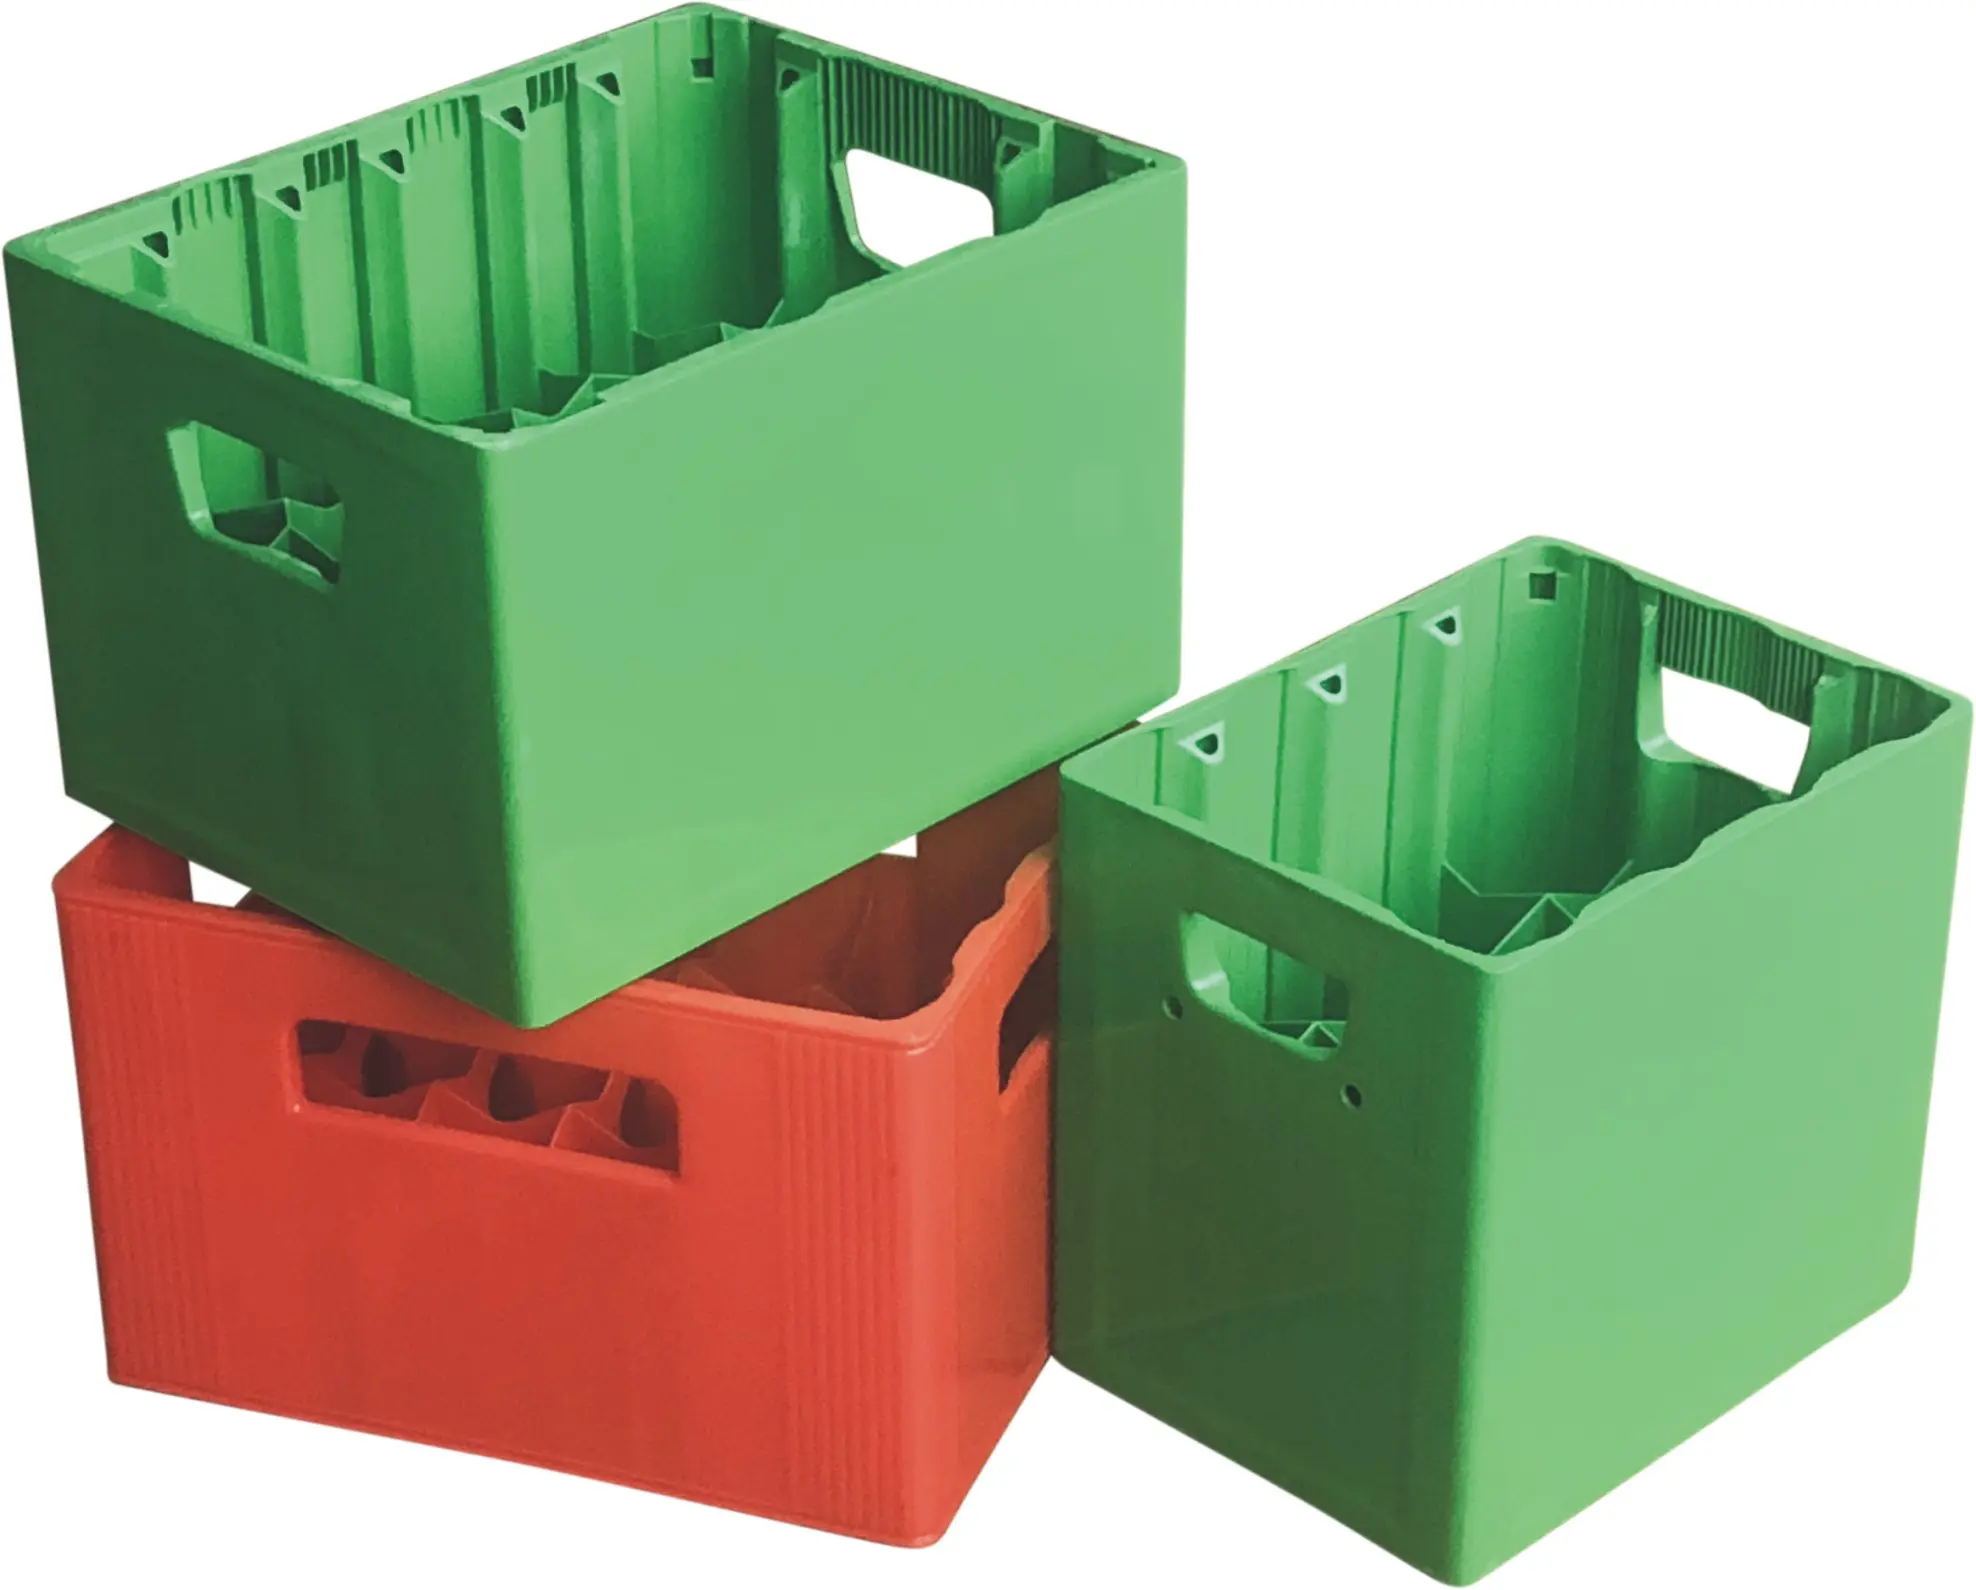 Molde de plástico para injeção de vegetais, de alta qualidade, crata de frutas, forma/caixa de injeção de plástico